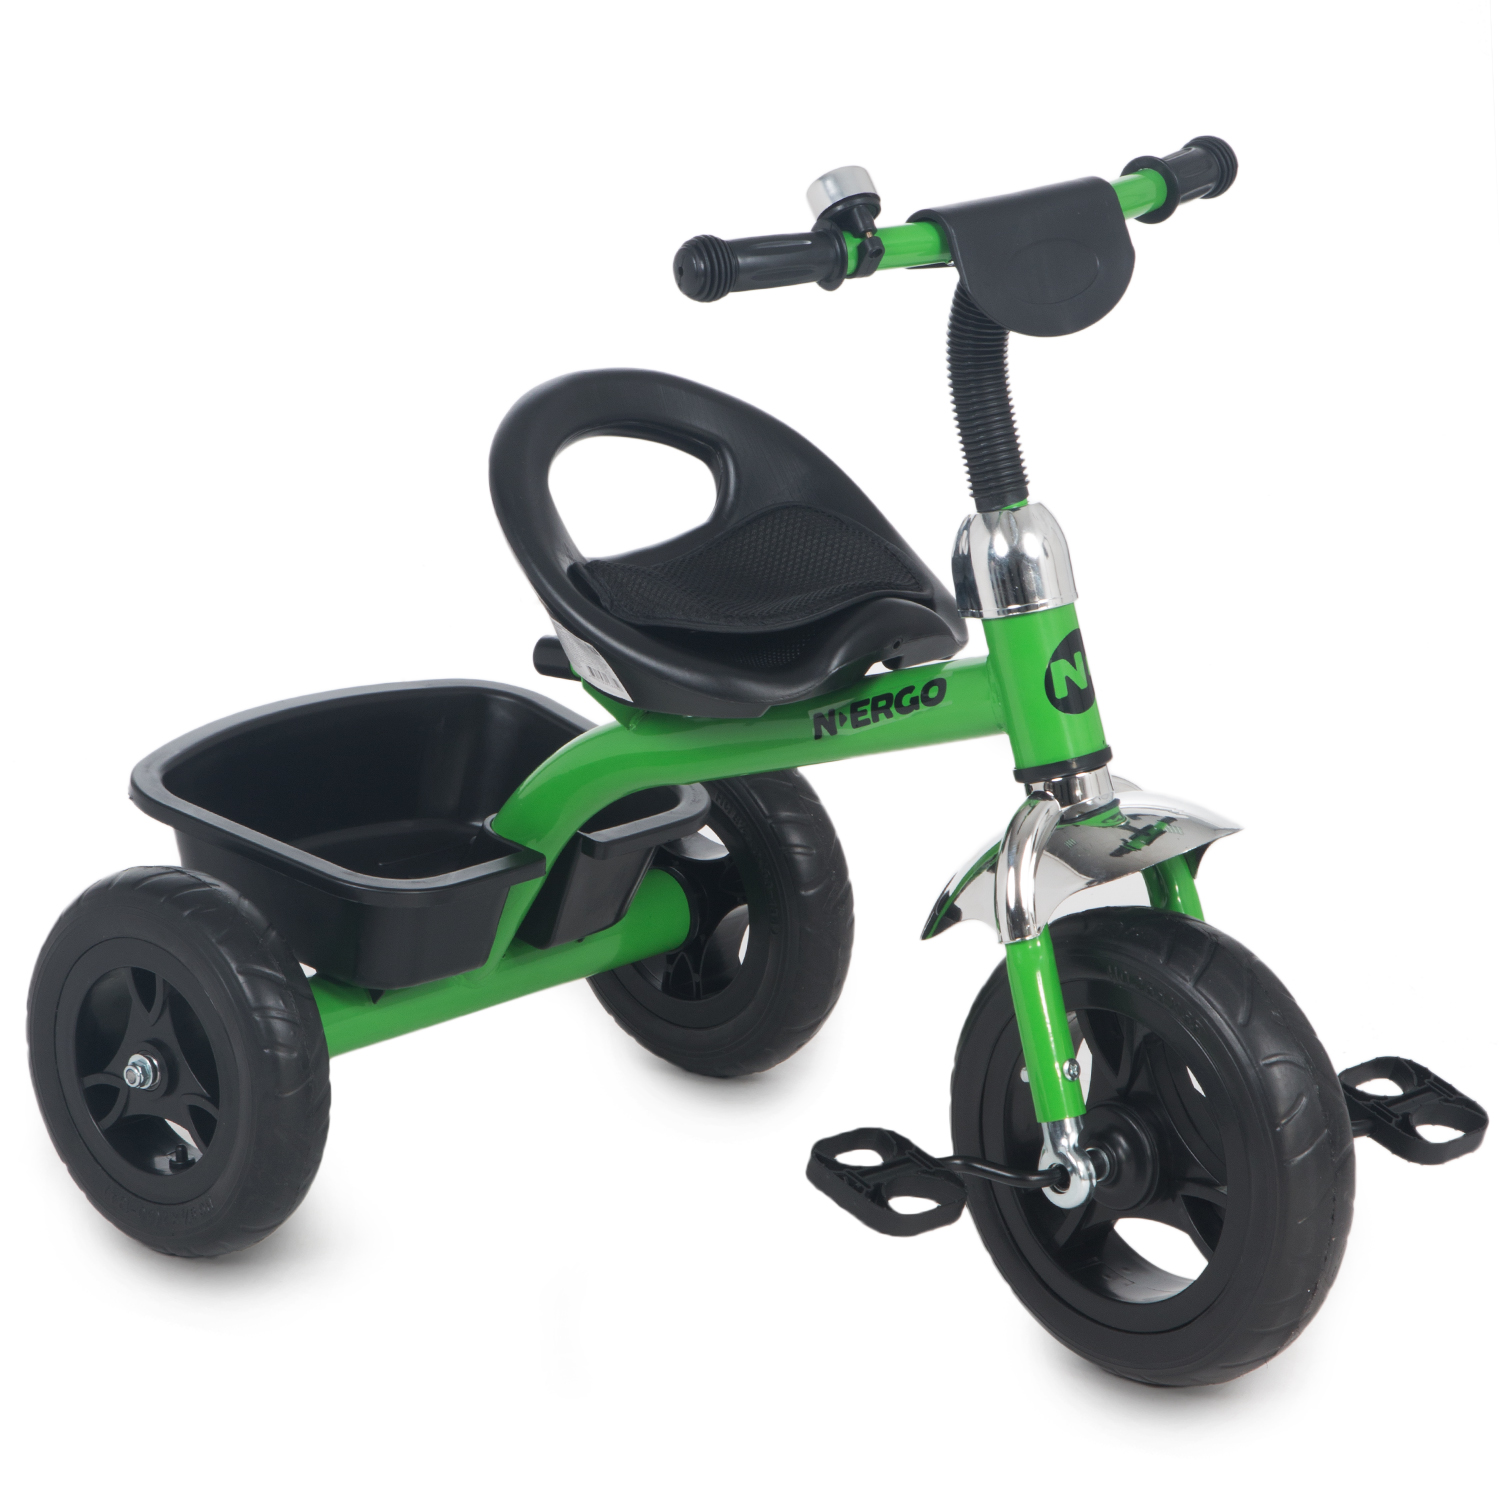 фото Трехколесный велосипед n.ergo k202n 2021, зеленый/черный